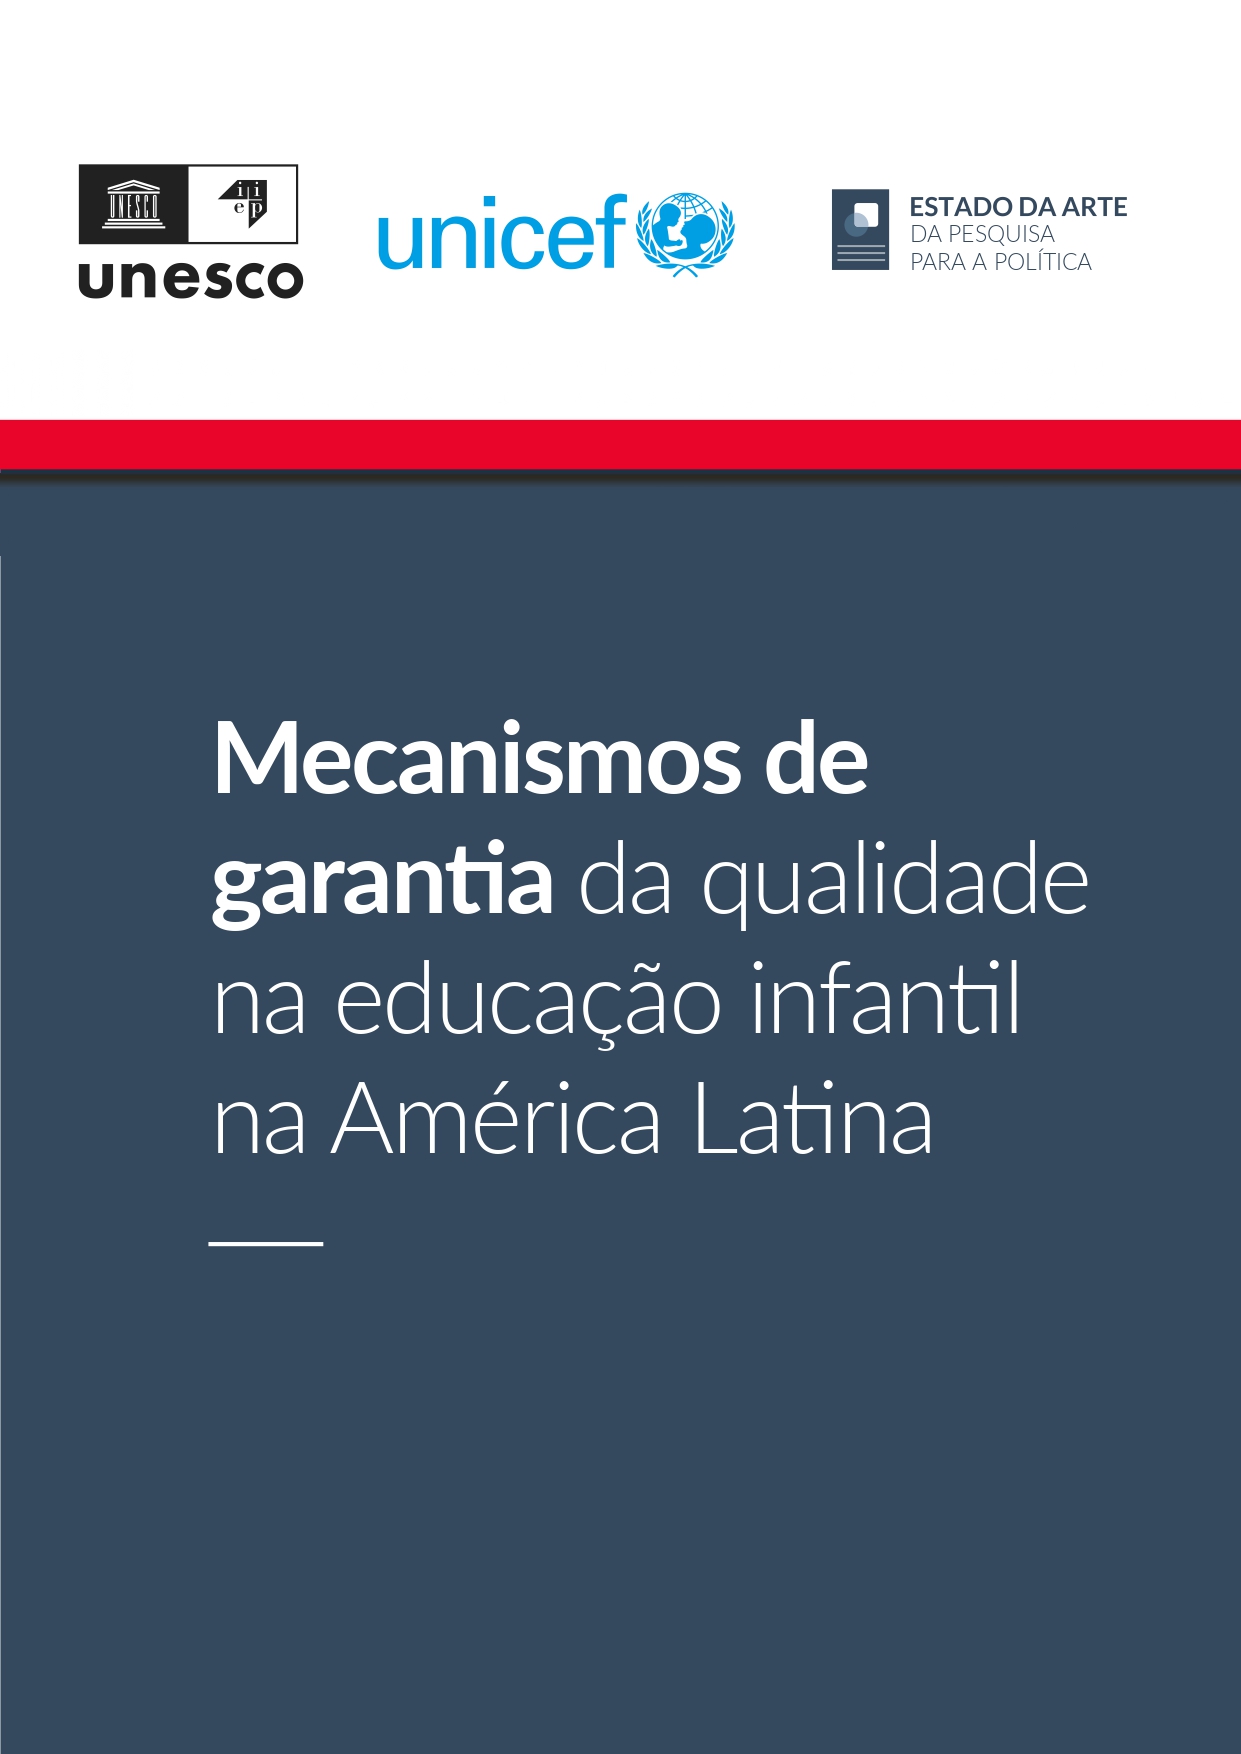 Mecanismos de garantia de qualidade na educação infantil na América Latina